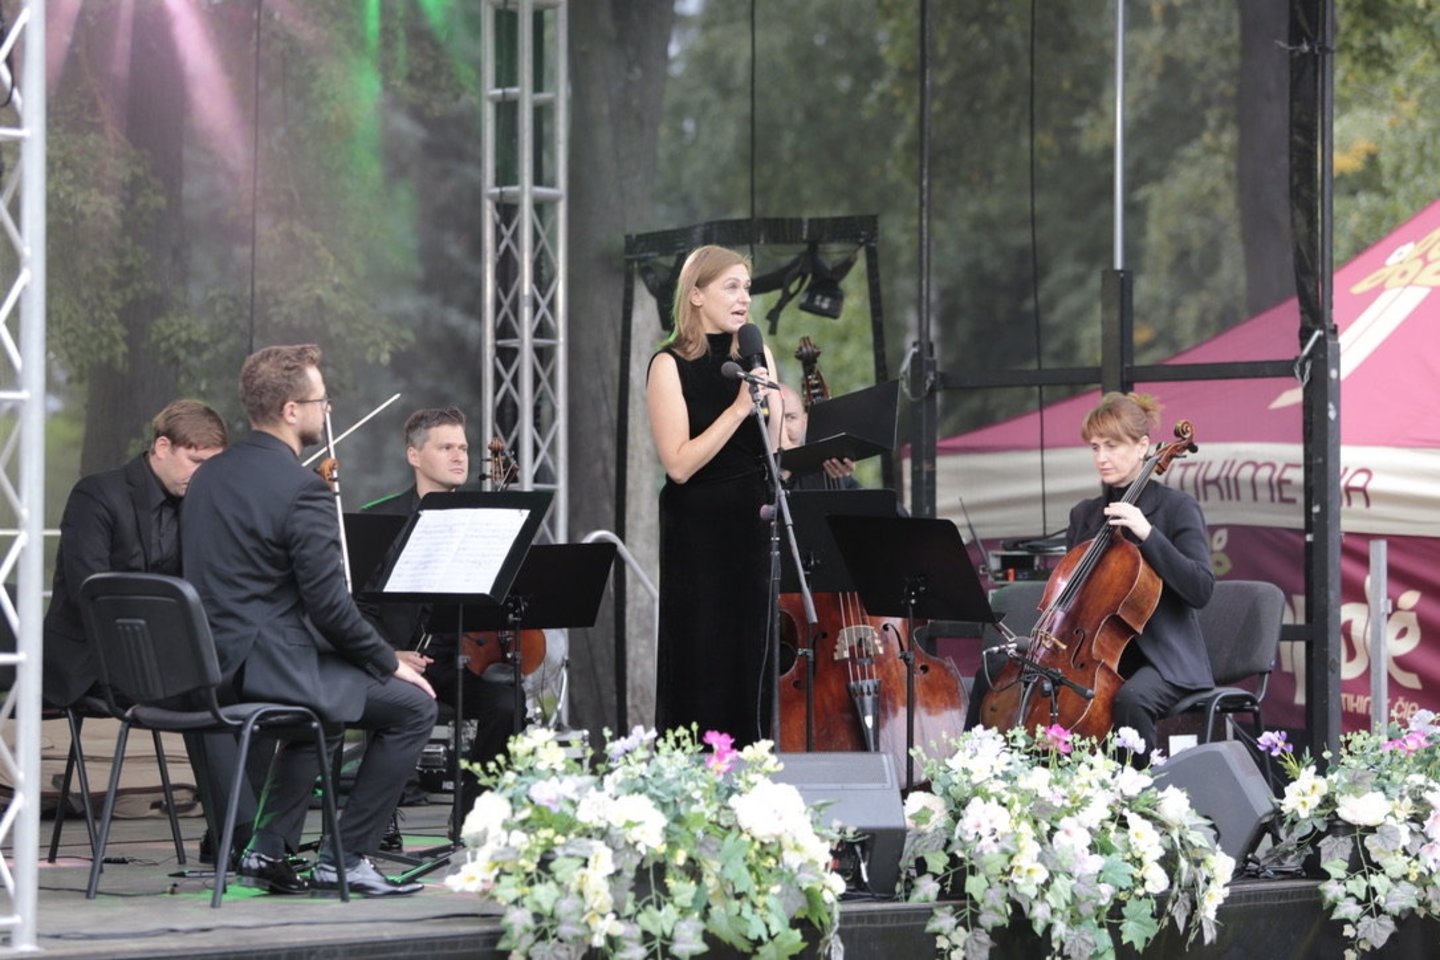 Sekmadienio vakarą išskirtine, festivalio „Marijampolė Music Park“ užsakymu sukurta programa „Paricija Kaas Projektas“ baigėsi aštuntasis MMP festivalis.<br>R. Pasiliausko nuotr.